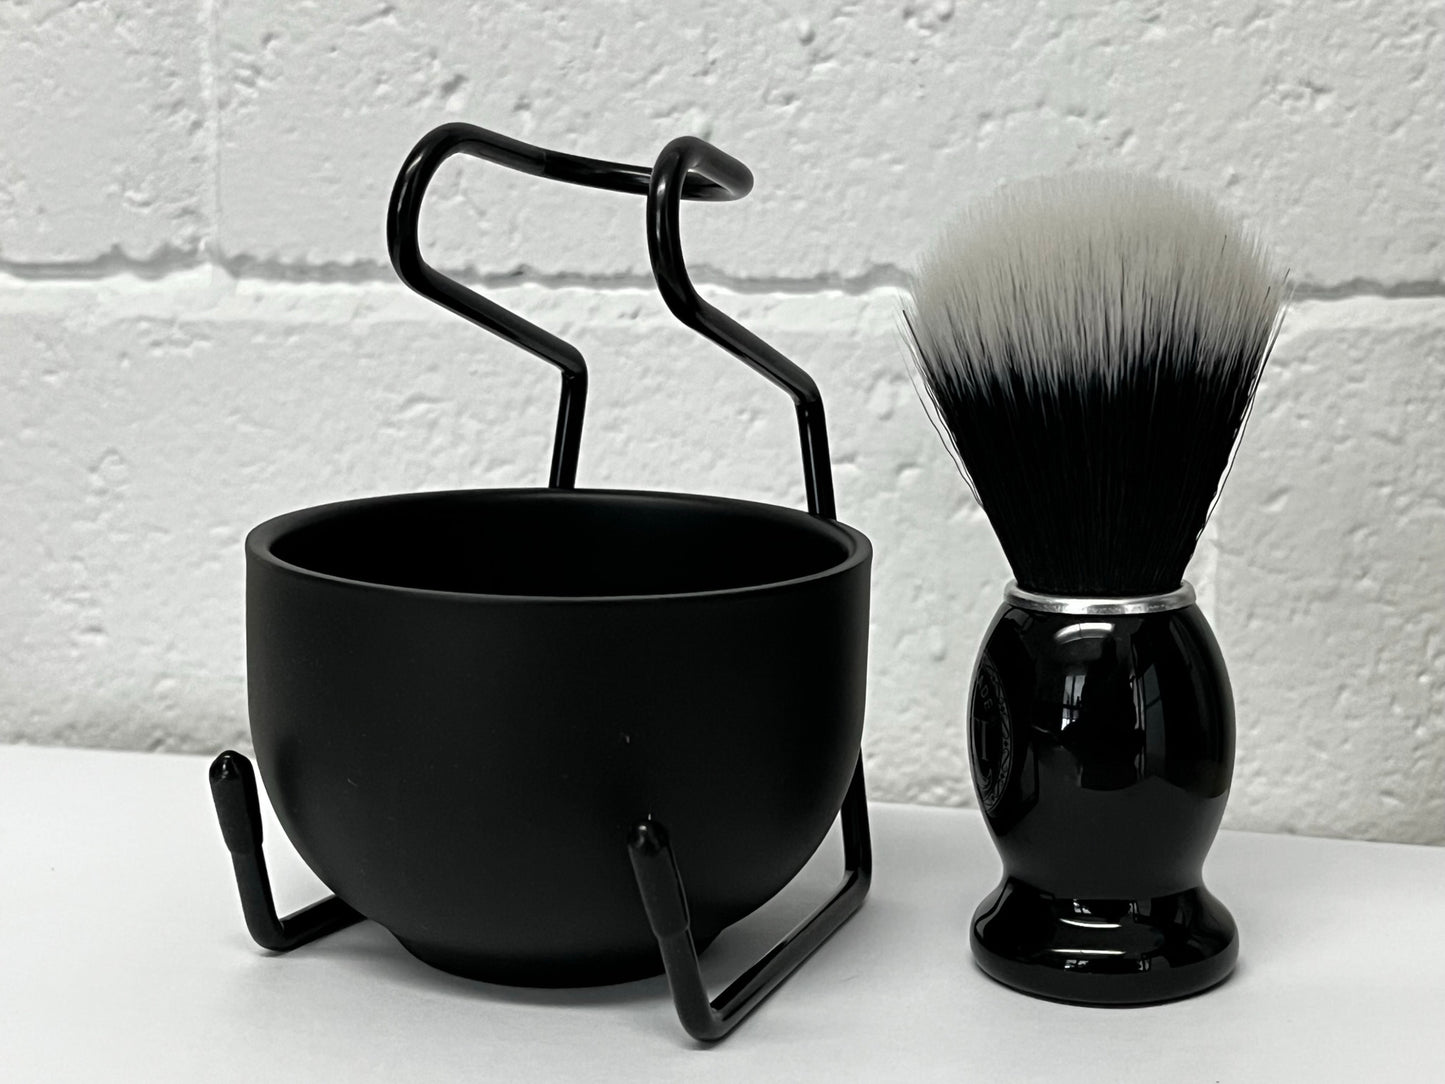 Holder for Shaving Brush &amp; Soap Bowl